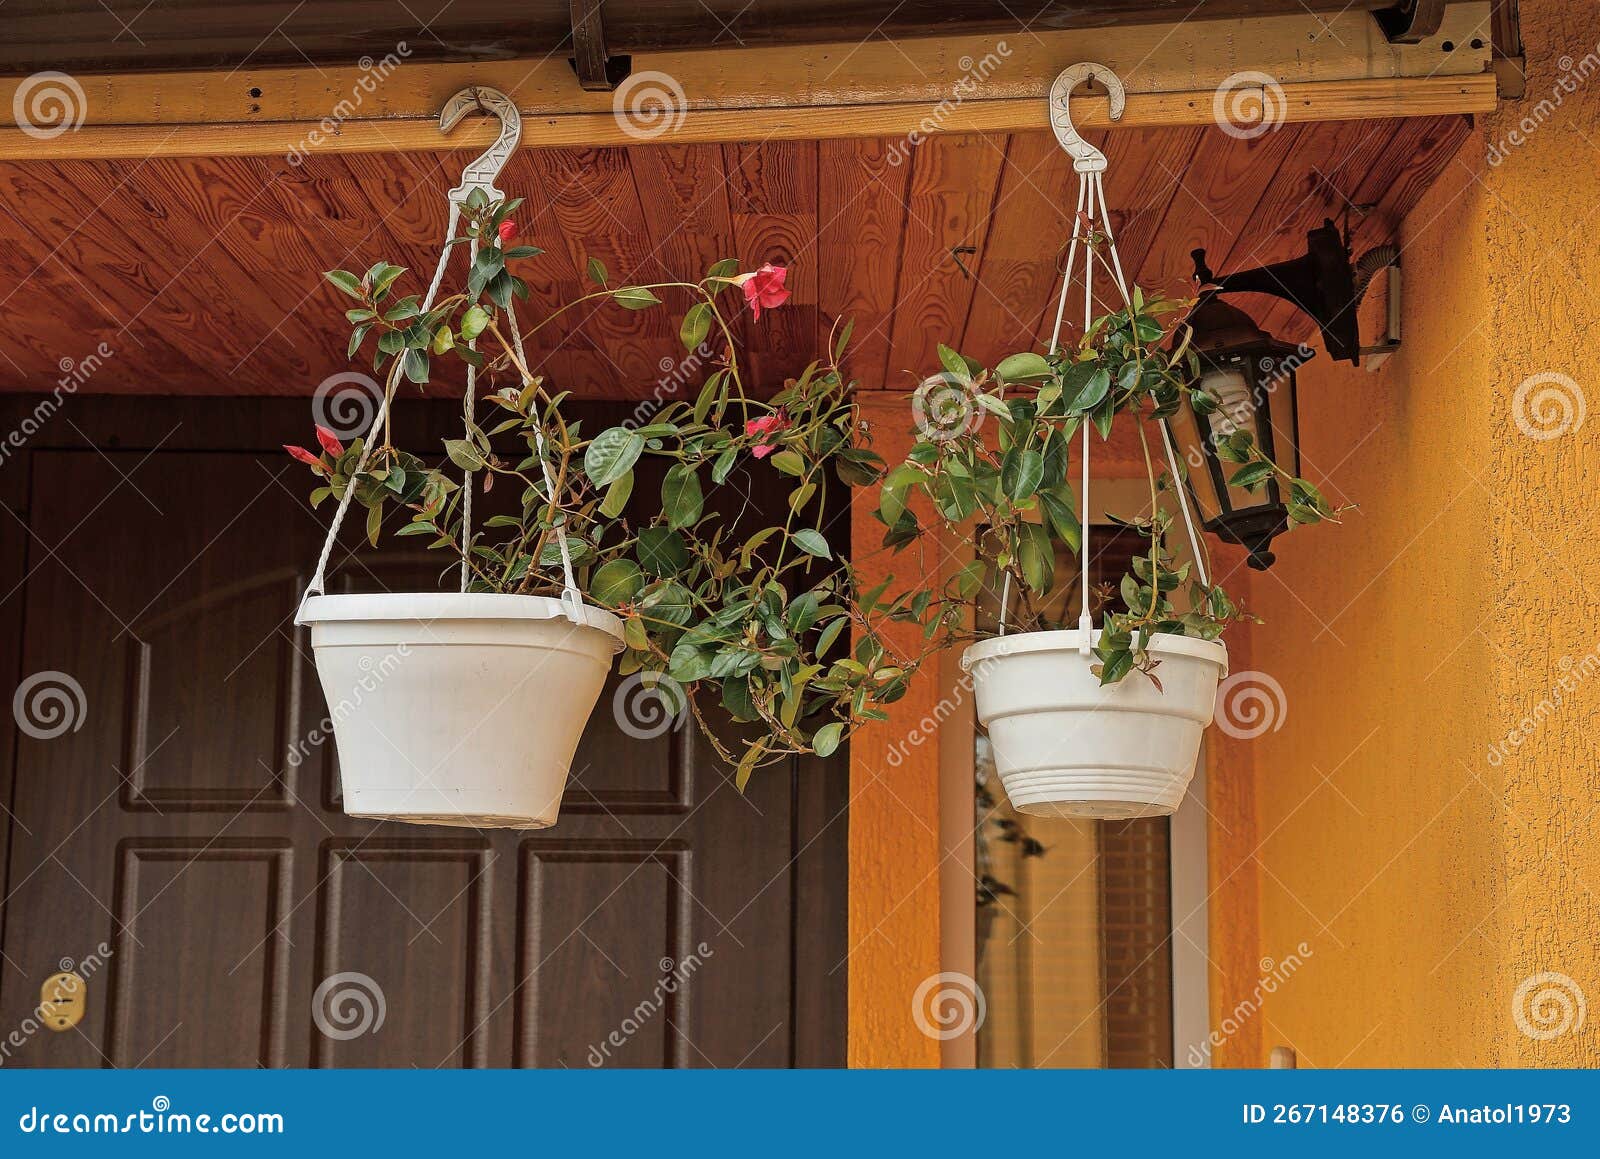 Deux Pots à Fleurs En Plastique Blanc Avec Plantes Vertes Et Fleurs Rouges  Photo stock - Image du flowerpots, externe: 267148376